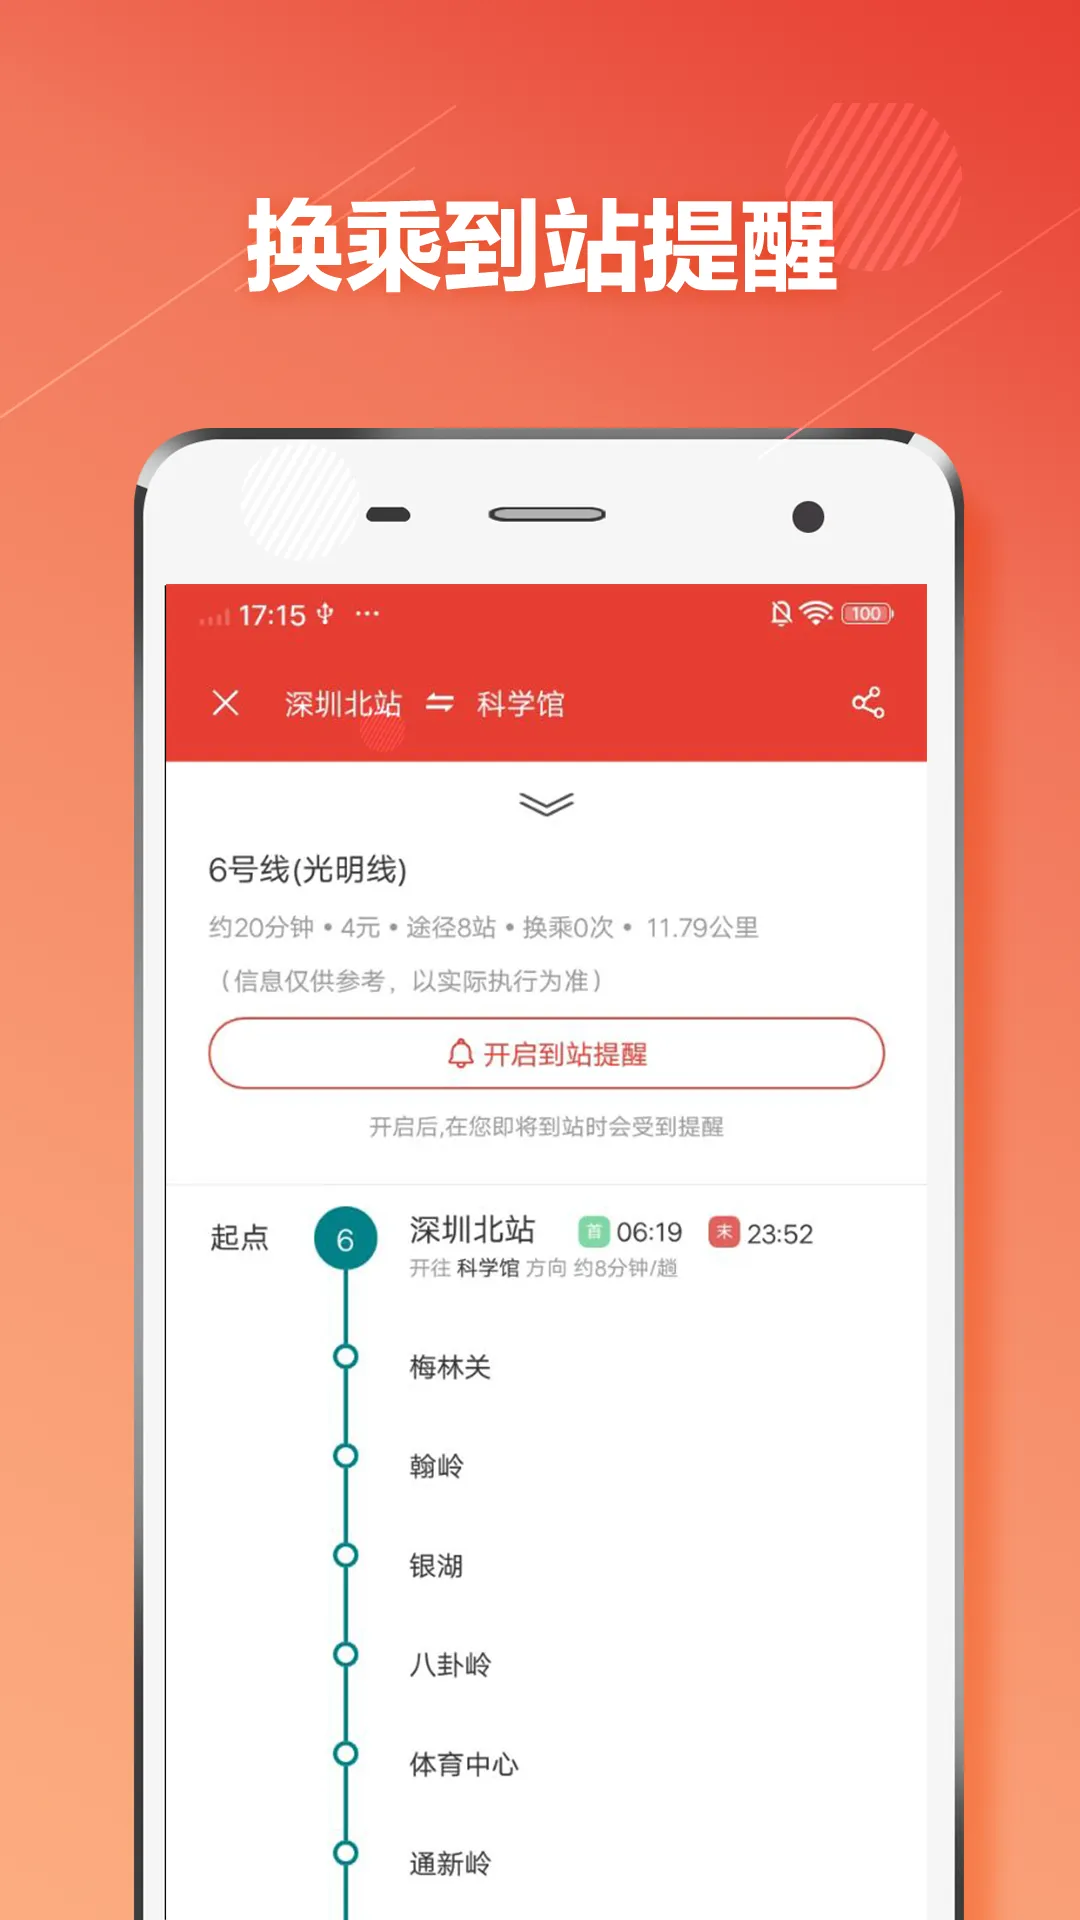 深圳地铁用什么软件可以支付 深圳地铁支付软件推荐